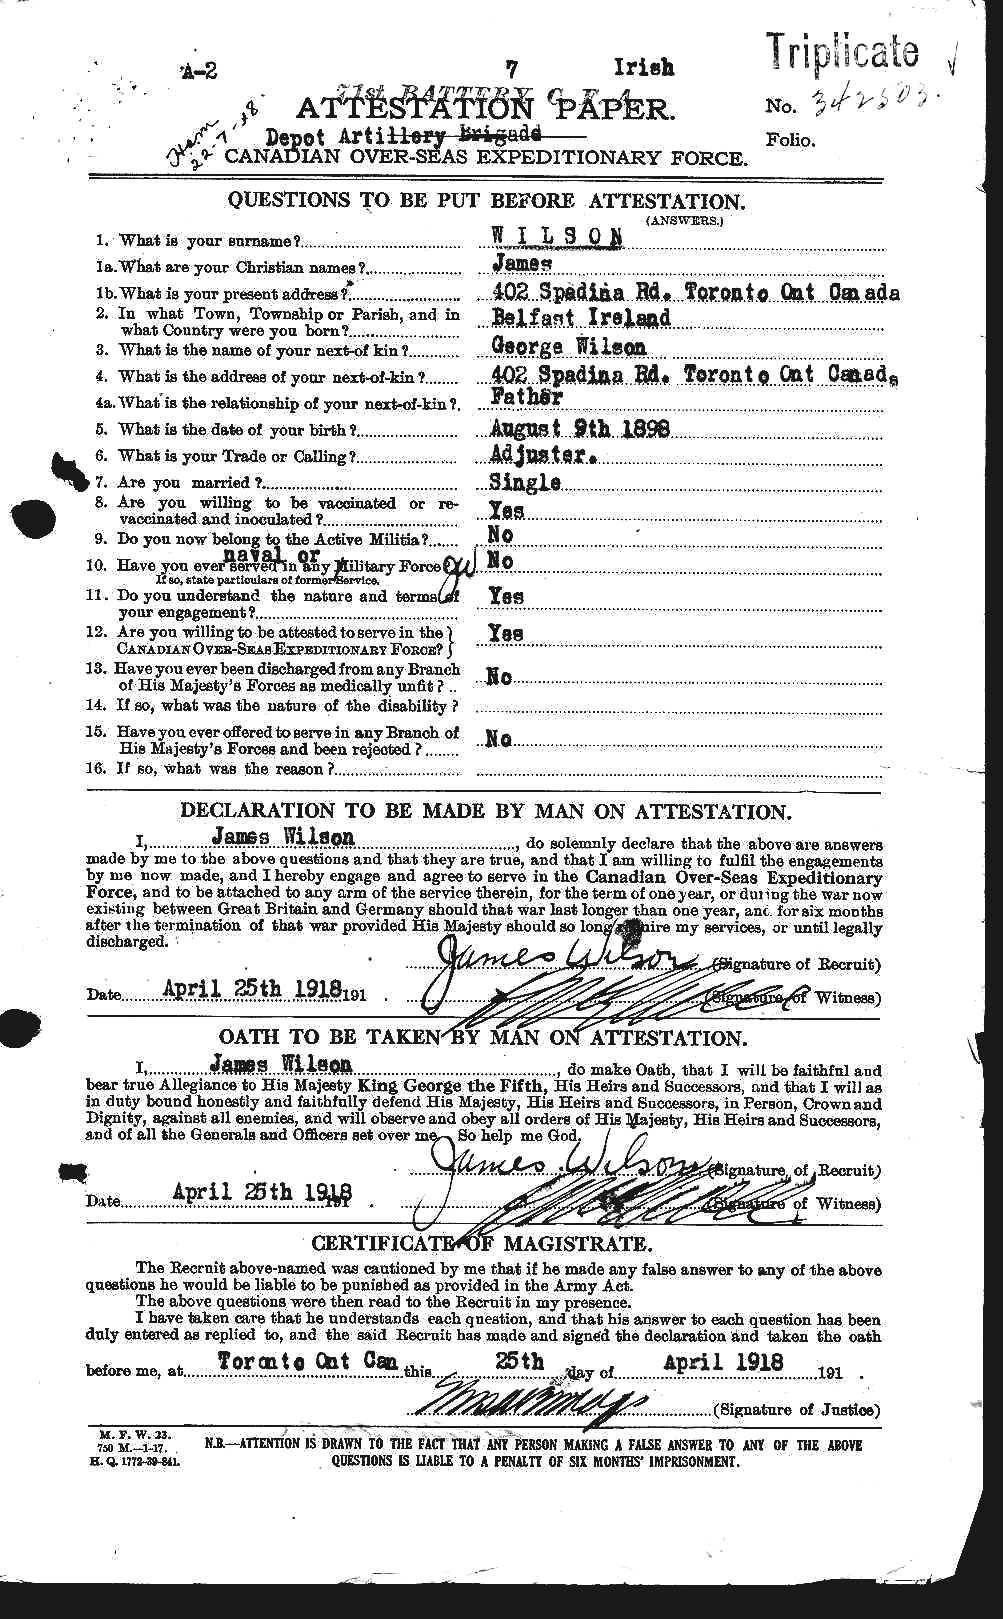 Dossiers du Personnel de la Première Guerre mondiale - CEC 681354a